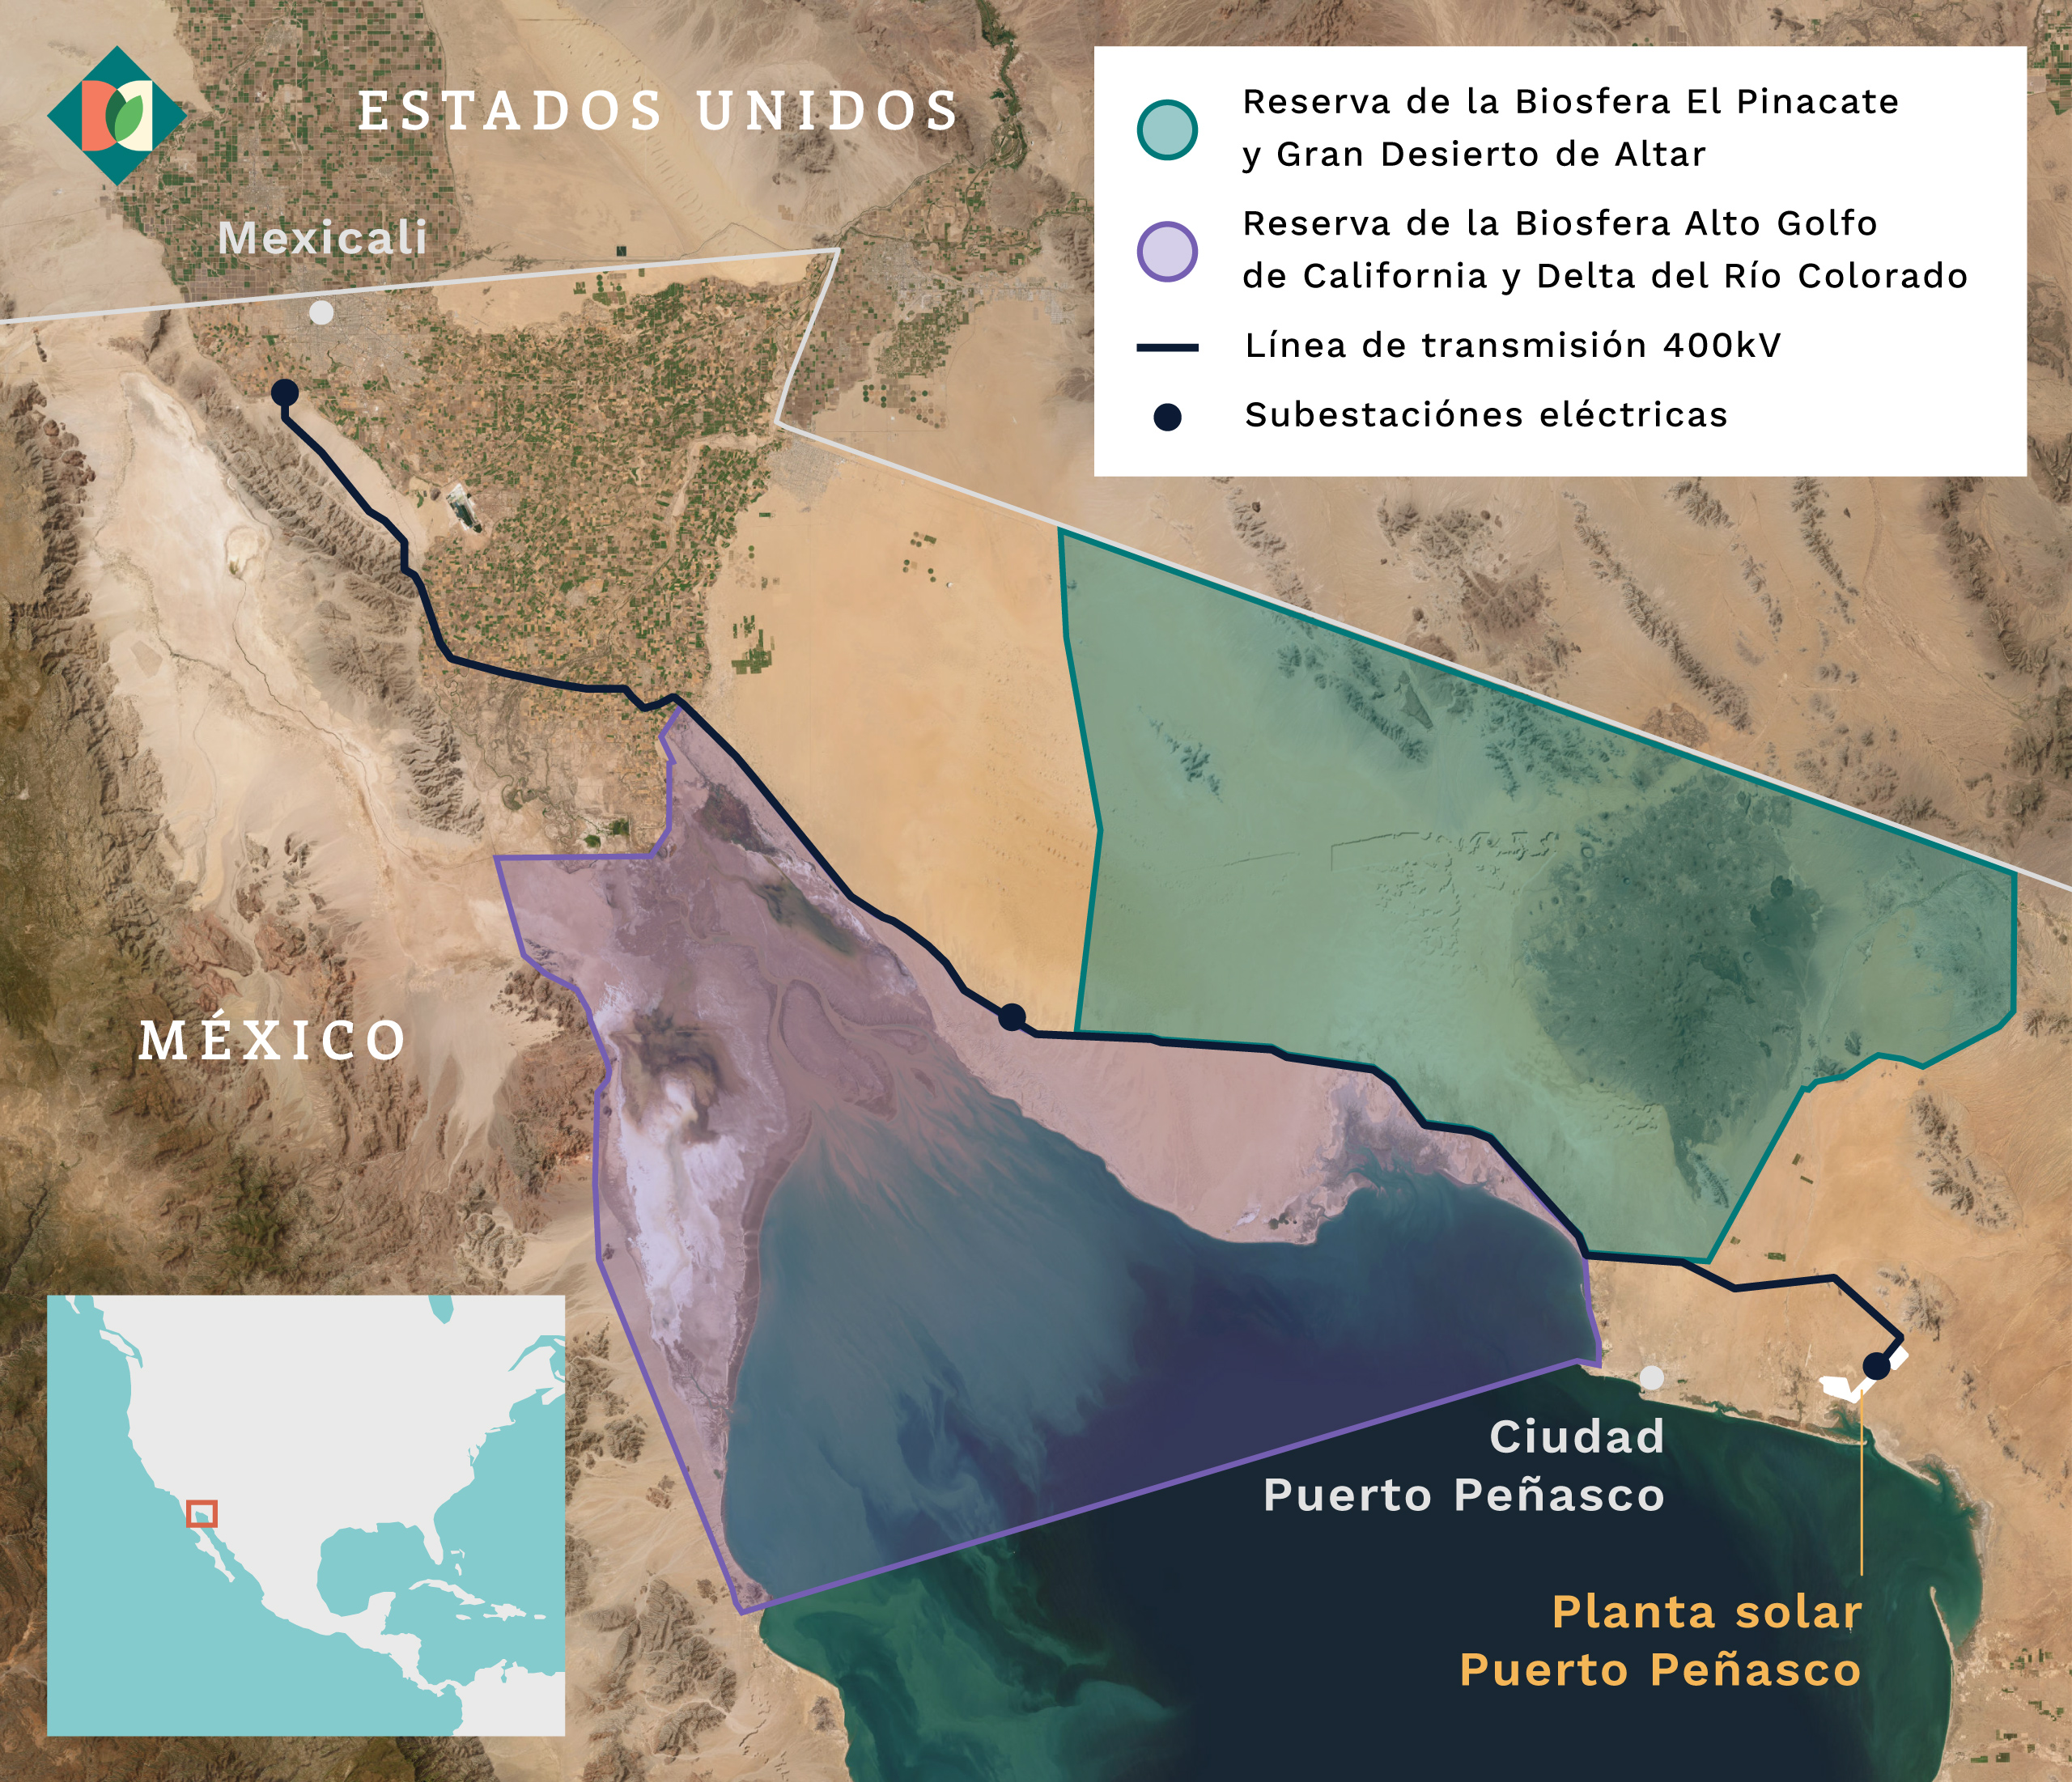 Mapa que muestra las reservas de la biosfera del estado mexicano de Sonora y las líneas de transmisión previstas de la central solar de Puerto Peñasco.